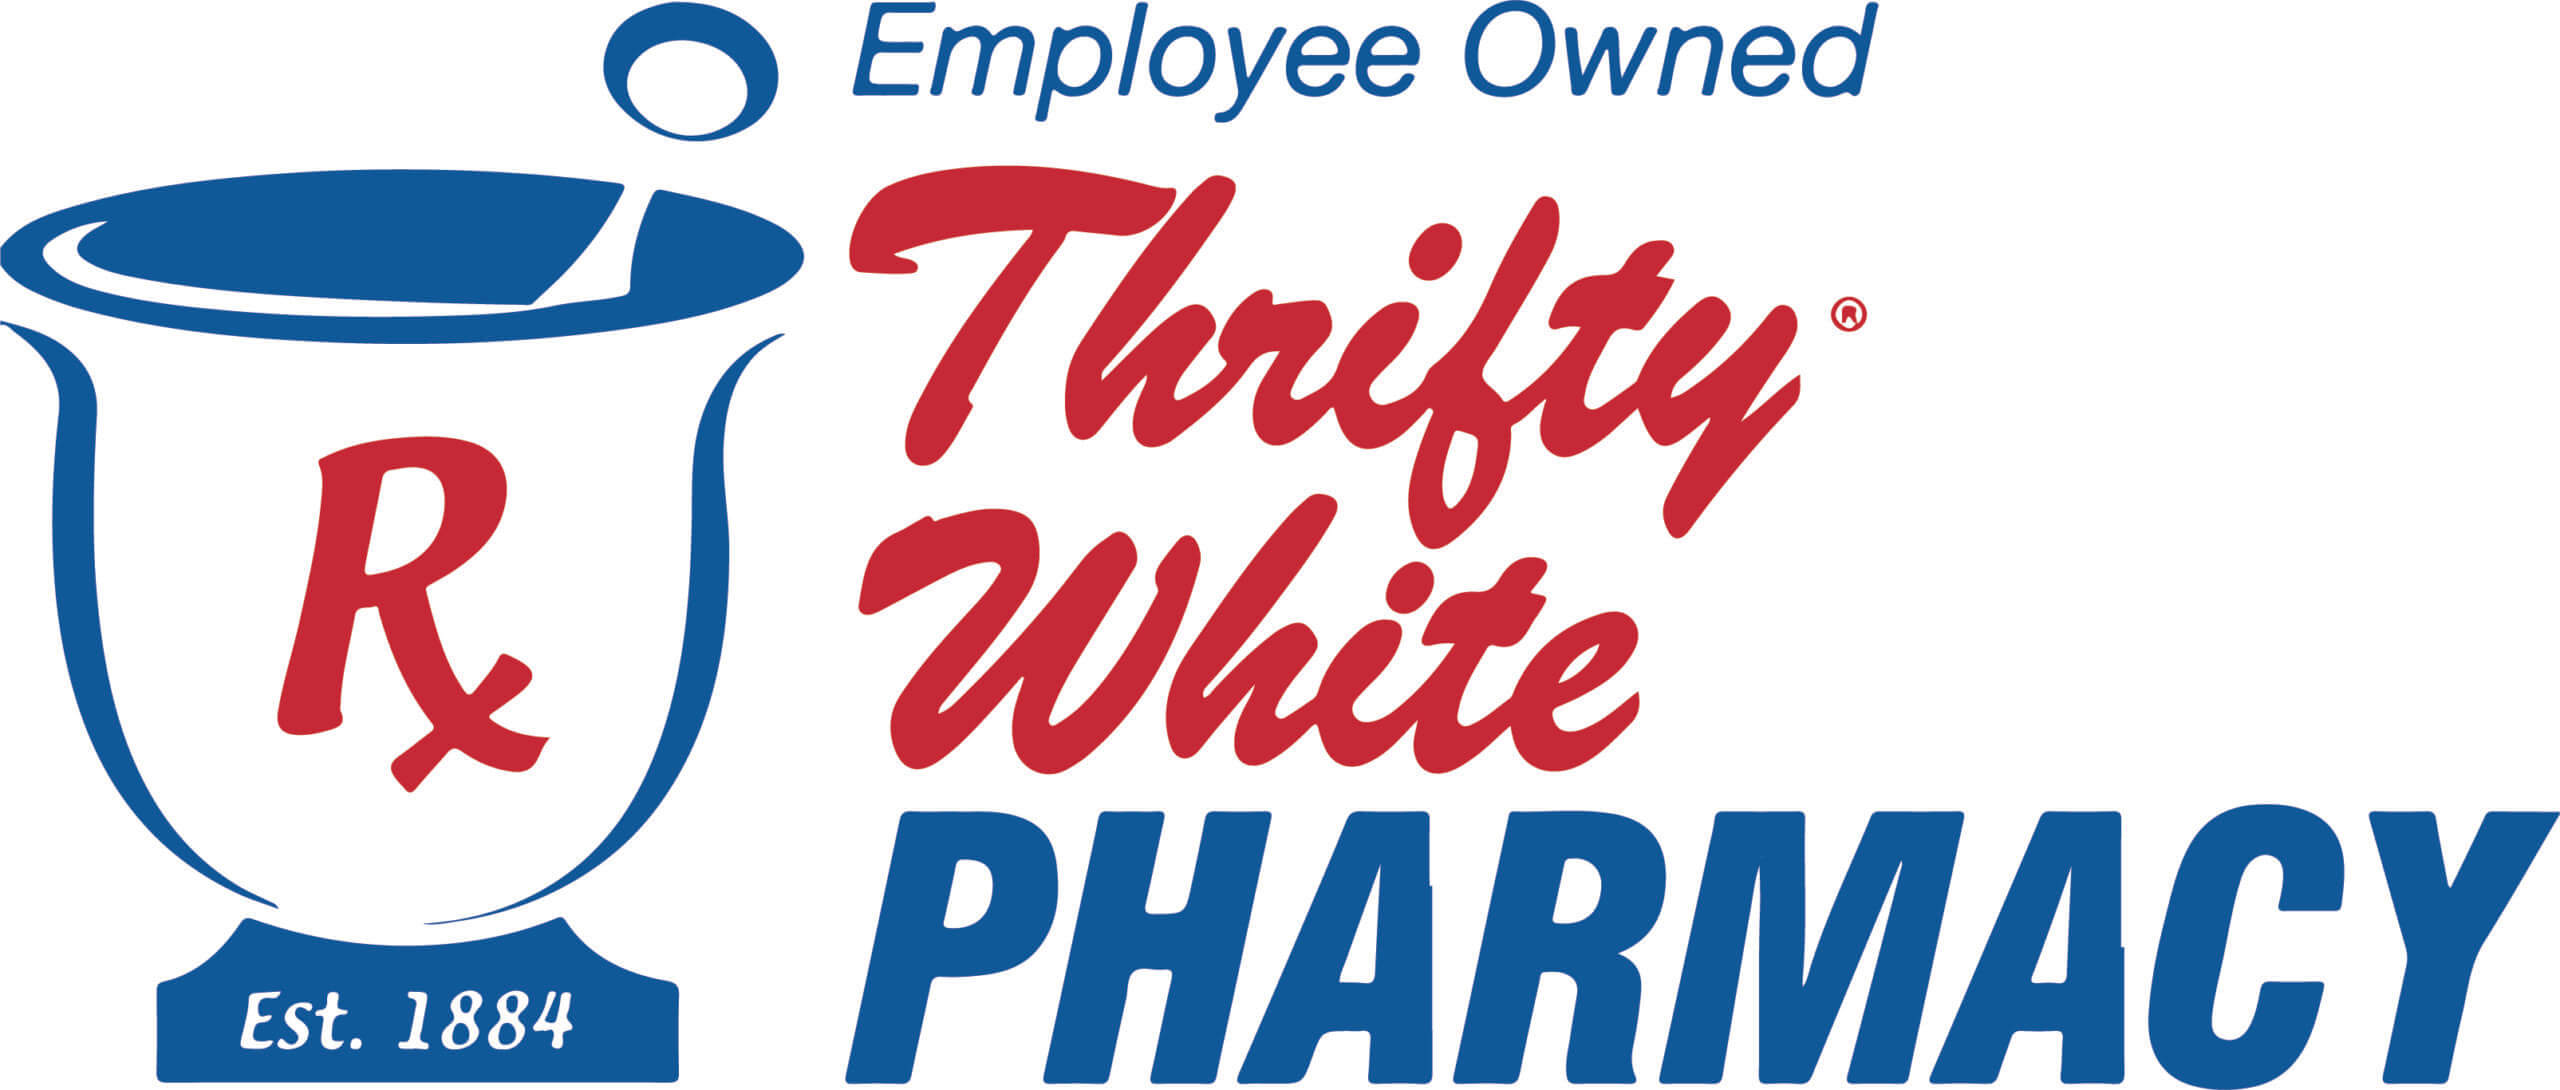 Thrifty White Pharmacy